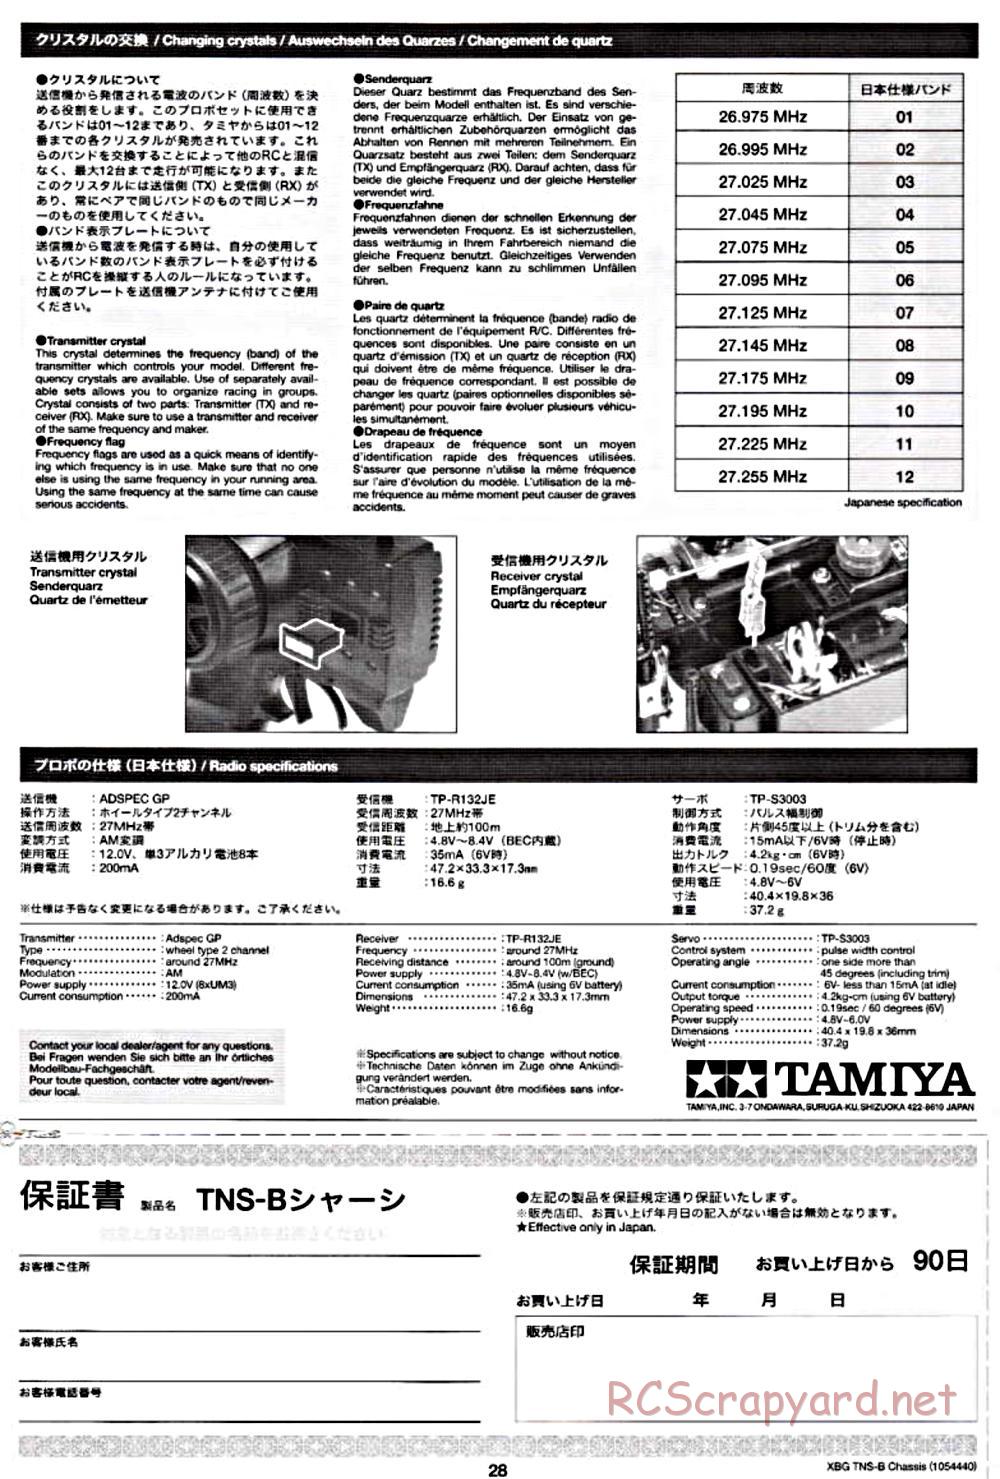 Tamiya - TNS-B Chassis - Manual - Page 28